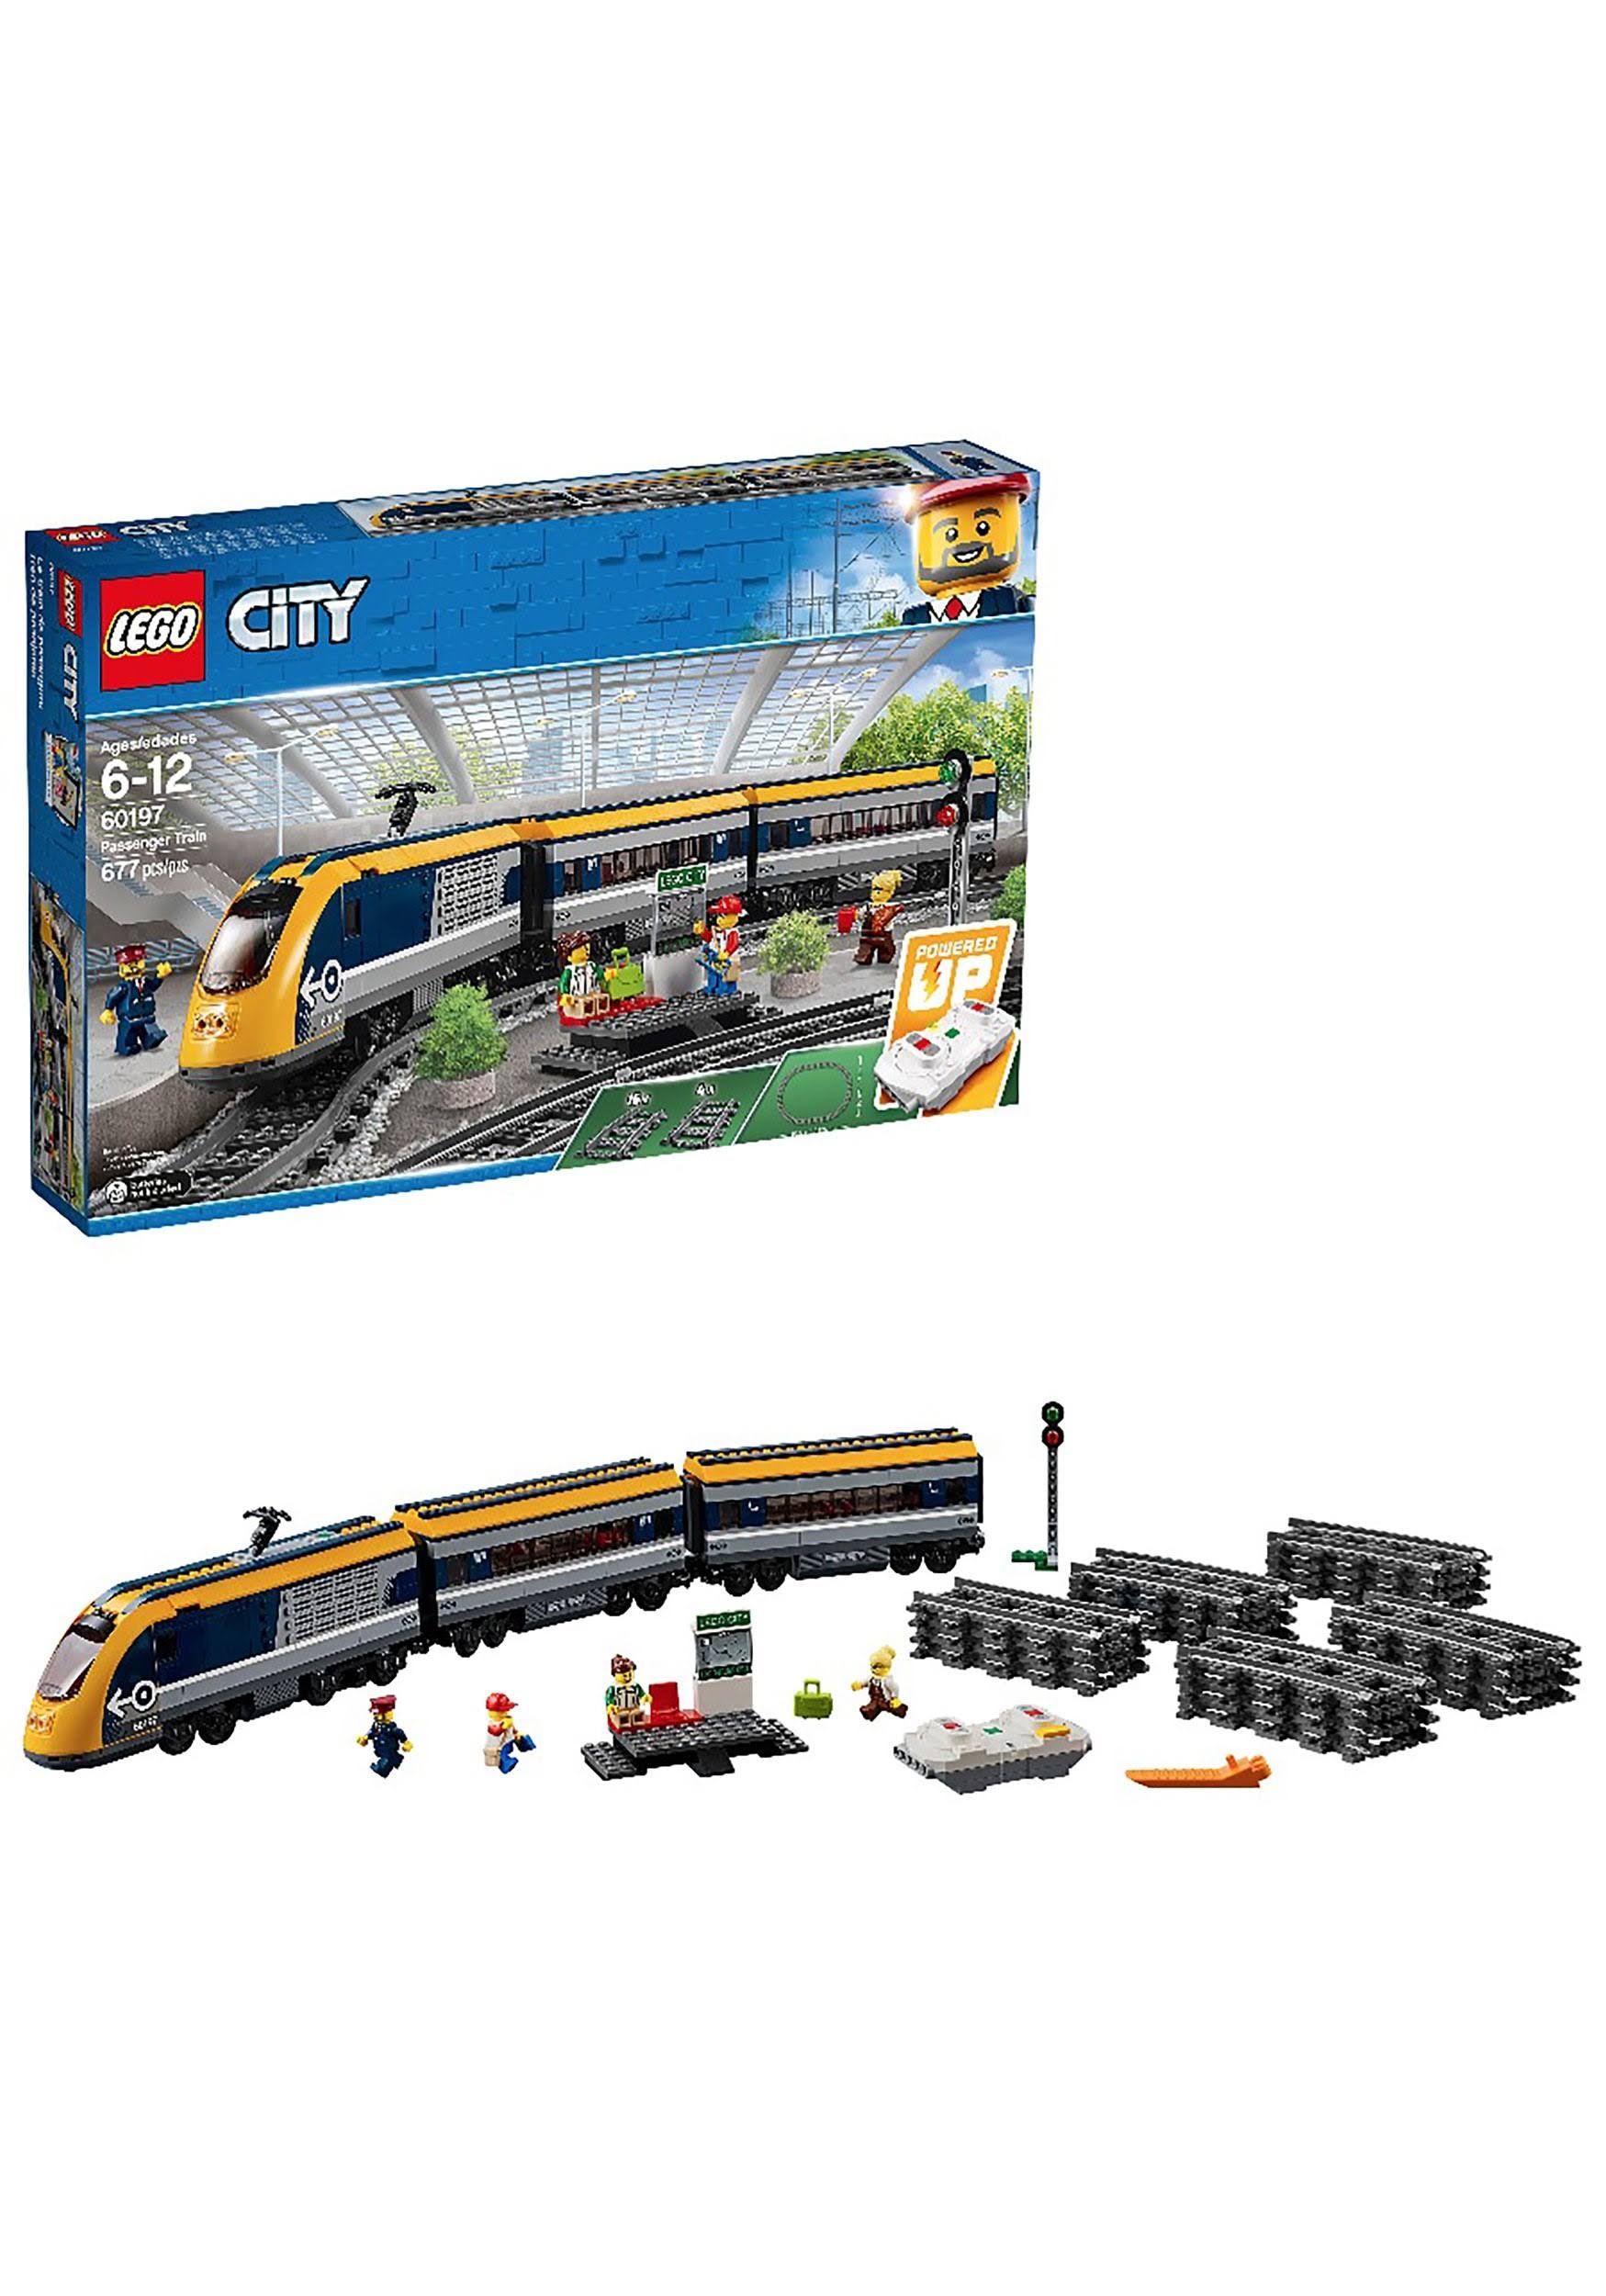 Lego 60197 City Passenger Train Set New with Sealed Box